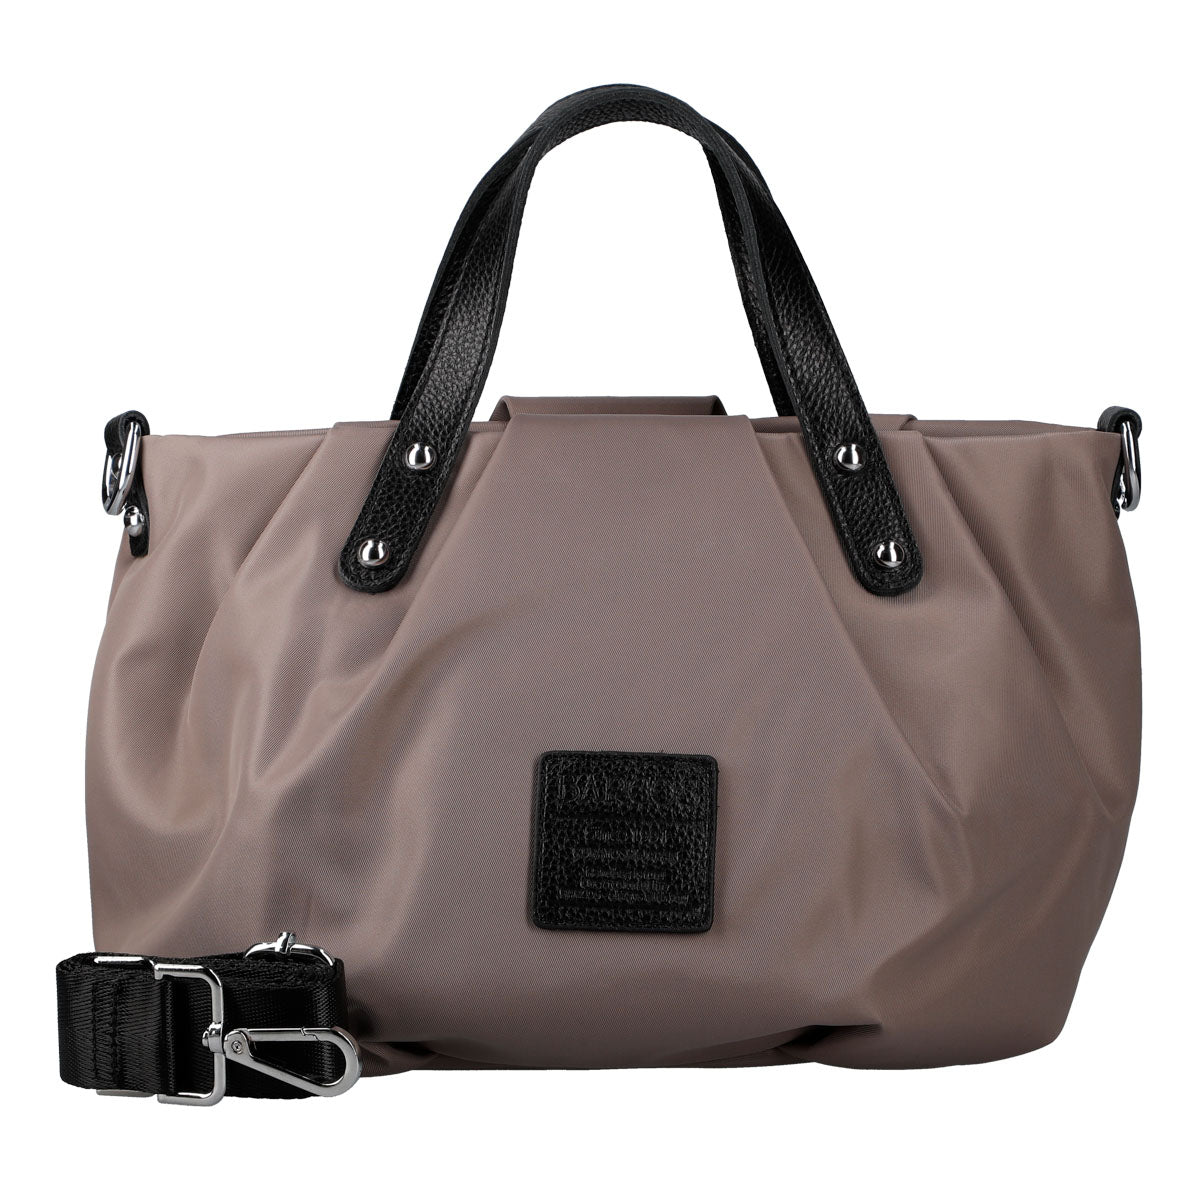 2 Way Lightweight Nylon Handbag